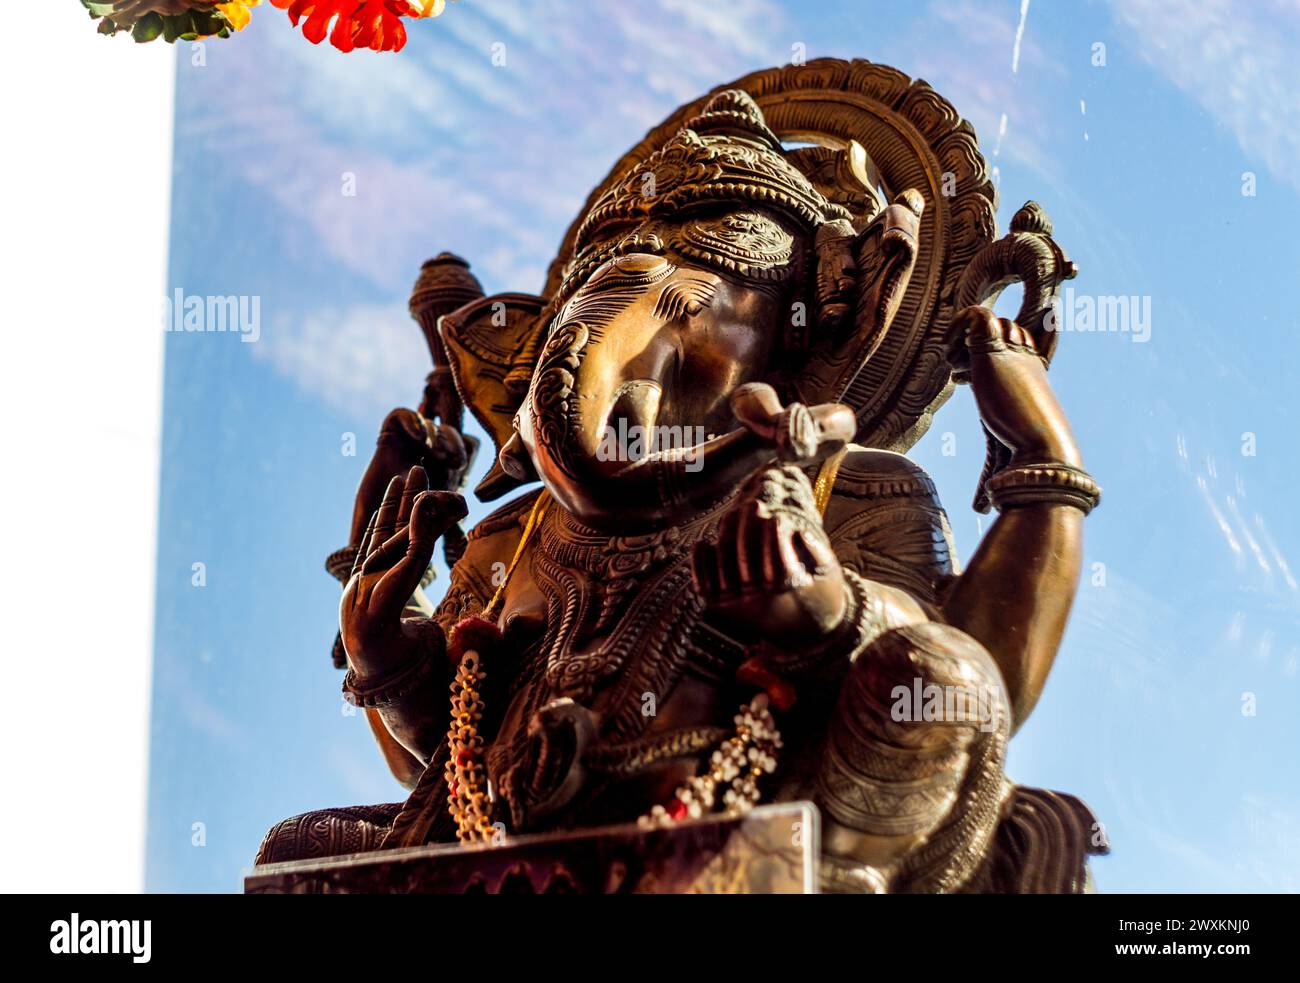 Etnomir, Russie - mars 2019 : sculpture du Dieu hindou Ganesha (également connu sous les noms de Ganapati, Vinayaka, Pillaiyar, Binayak), Dieu de la sagesse et du bien-être Banque D'Images